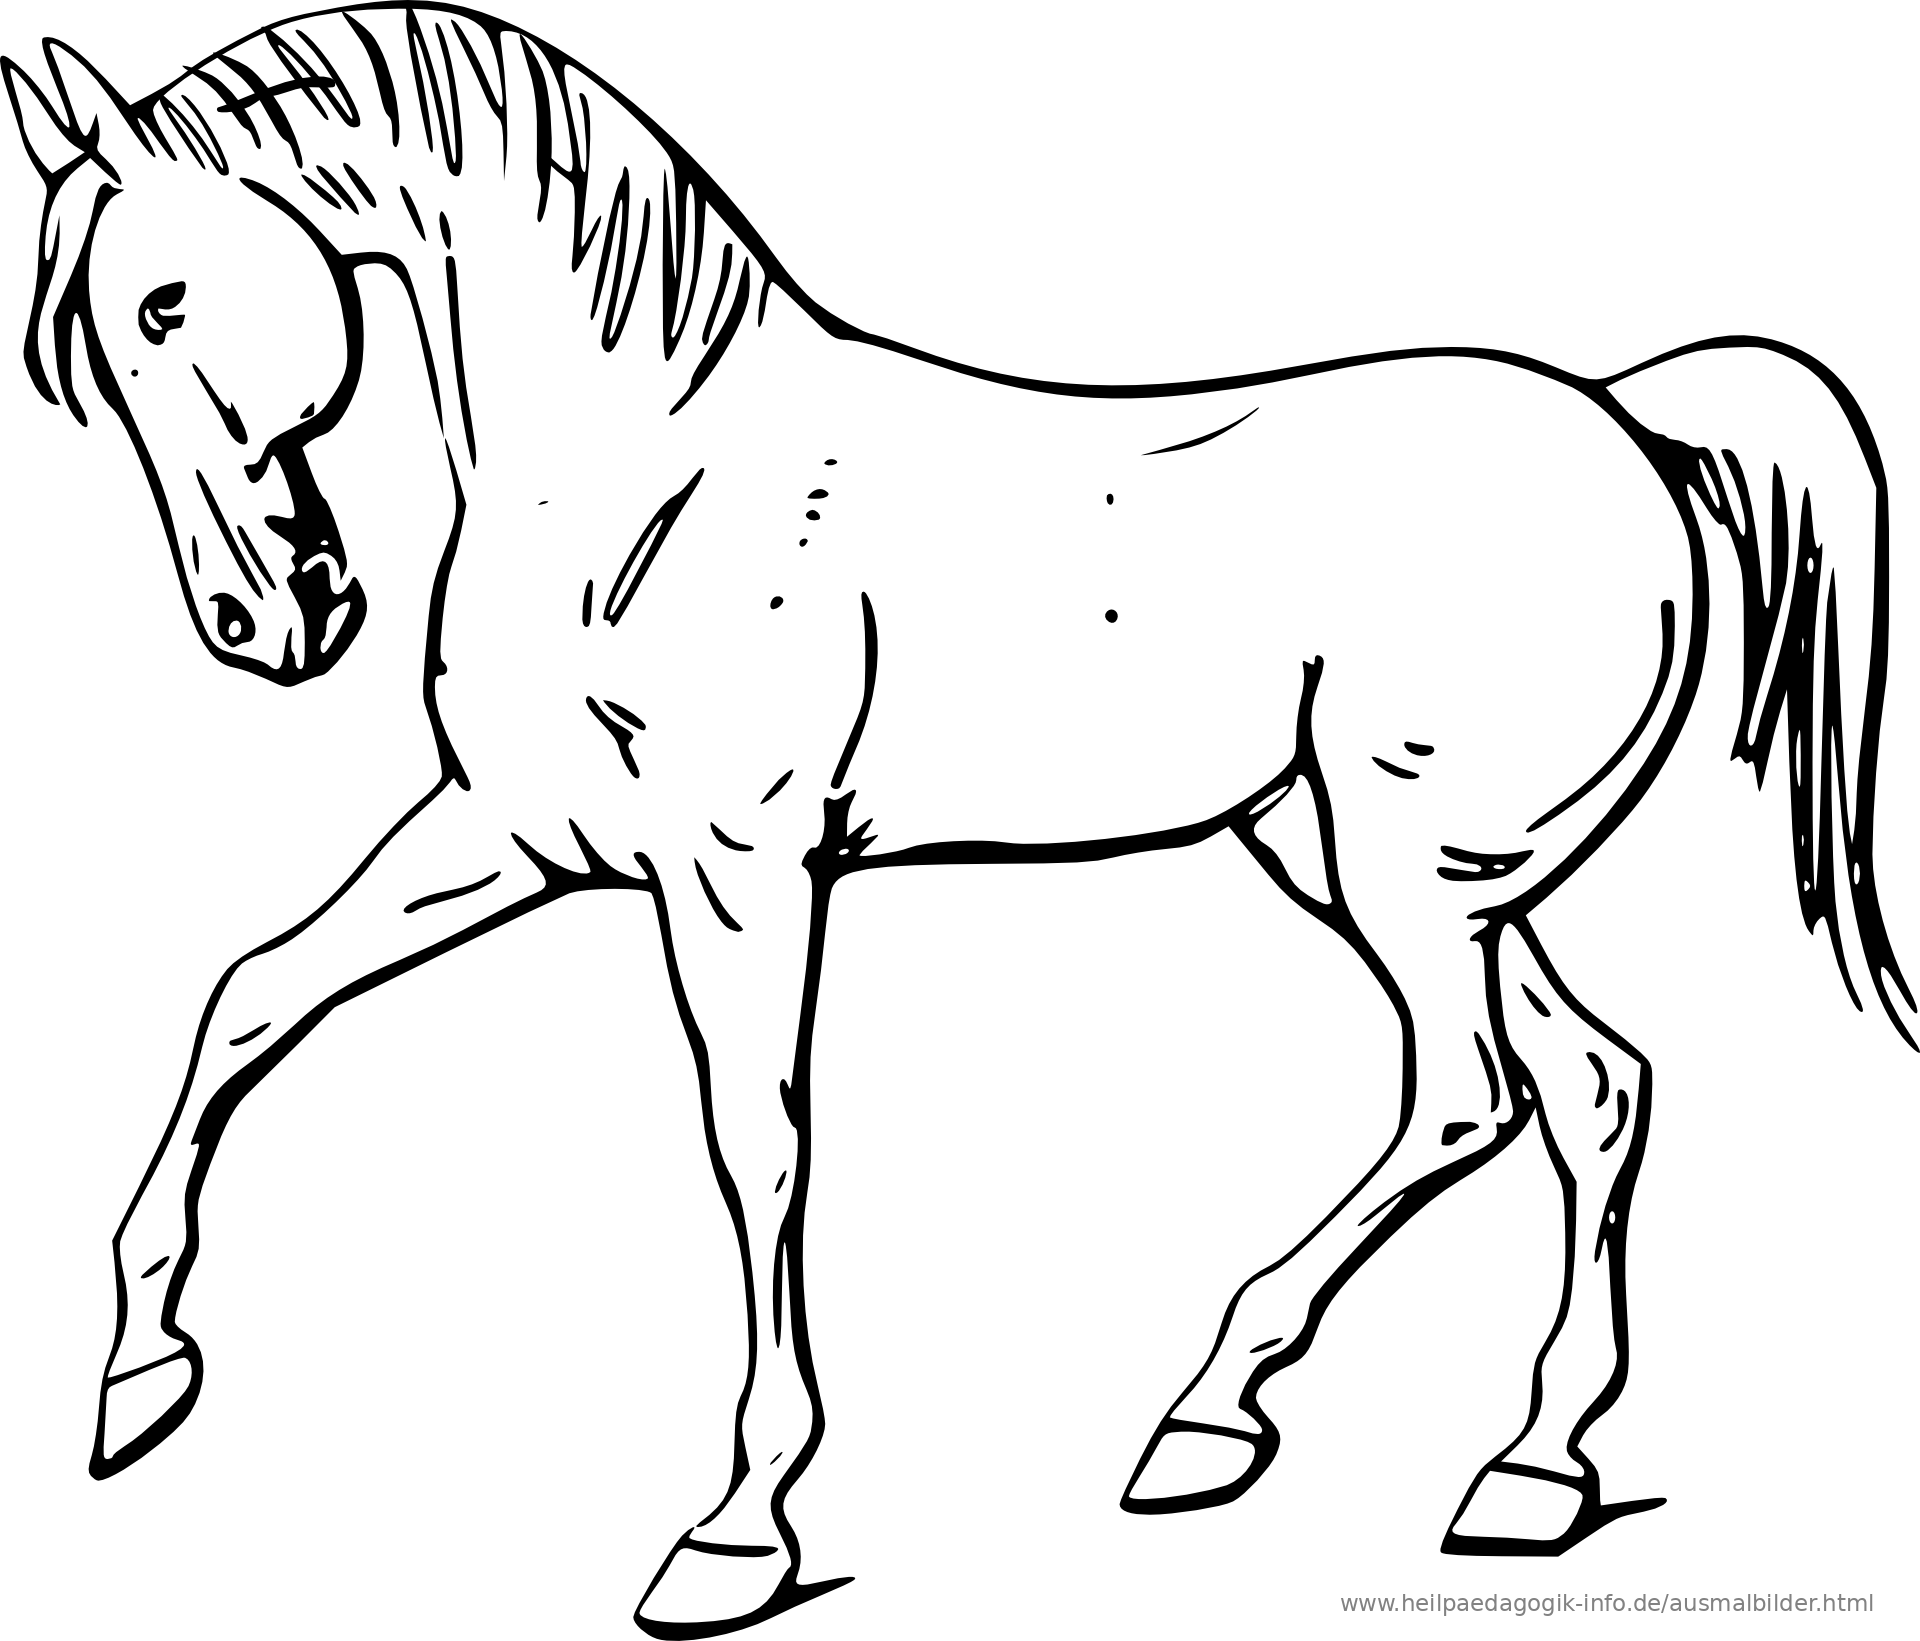 Malvorlage Pferdekopf Einfach | Coloring and Malvorlagan